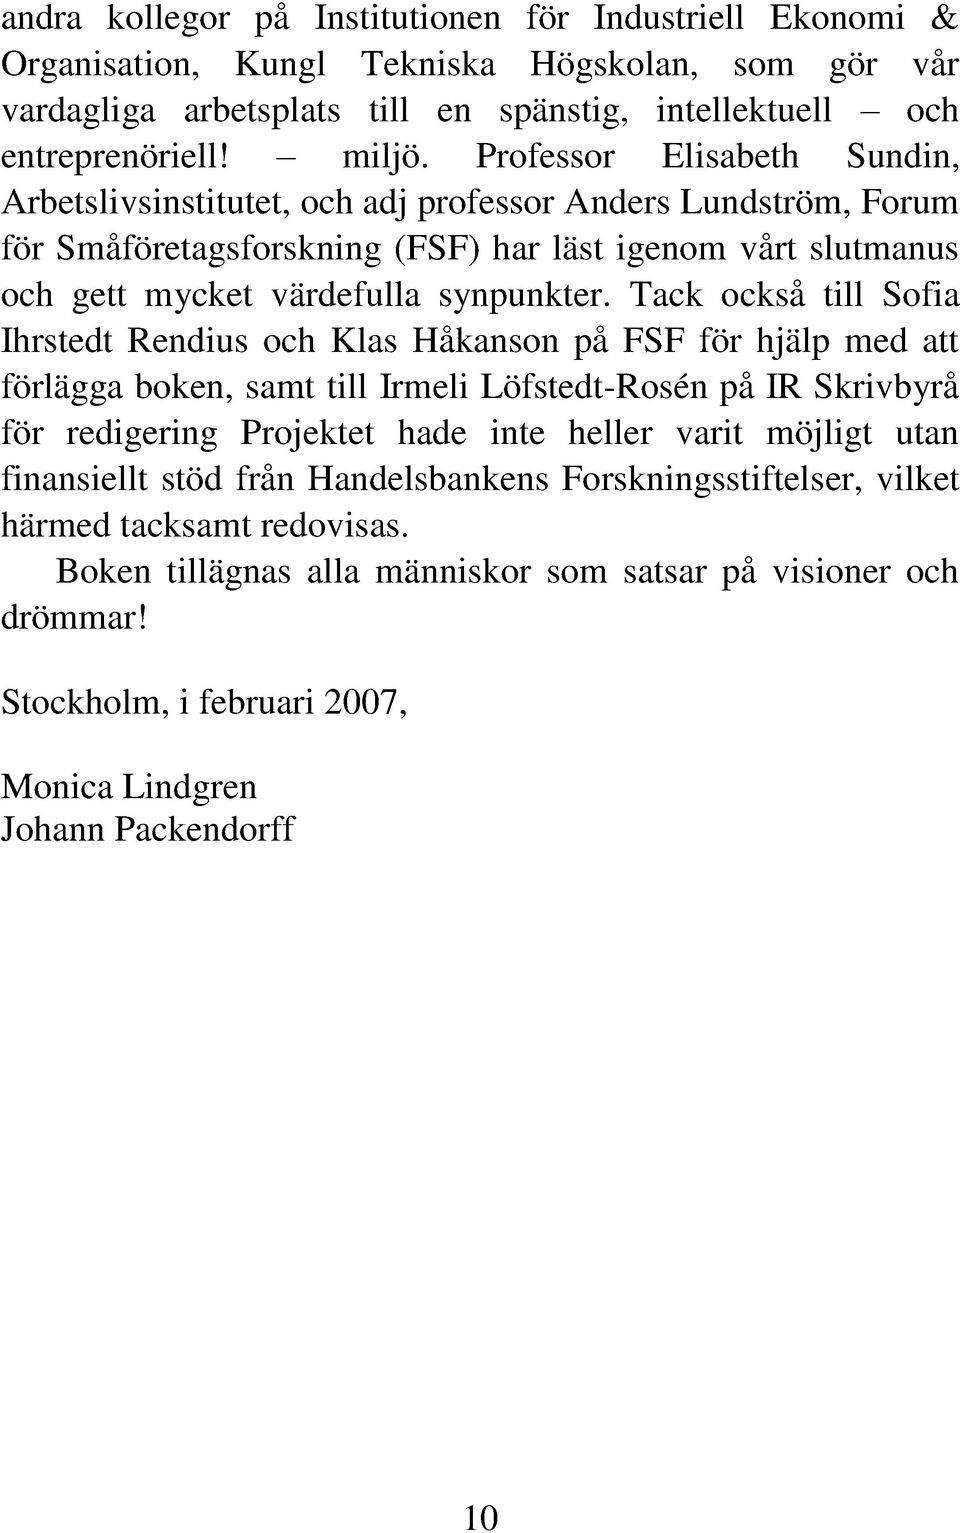 Tack också till Sofia Ihrstedt Rendius och Klas Håkanson på FSF för hjälp med att förlägga boken, samt till Irmeli Löfstedt-Rosén på IR Skrivbyrå för redigering Projektet hade inte heller varit